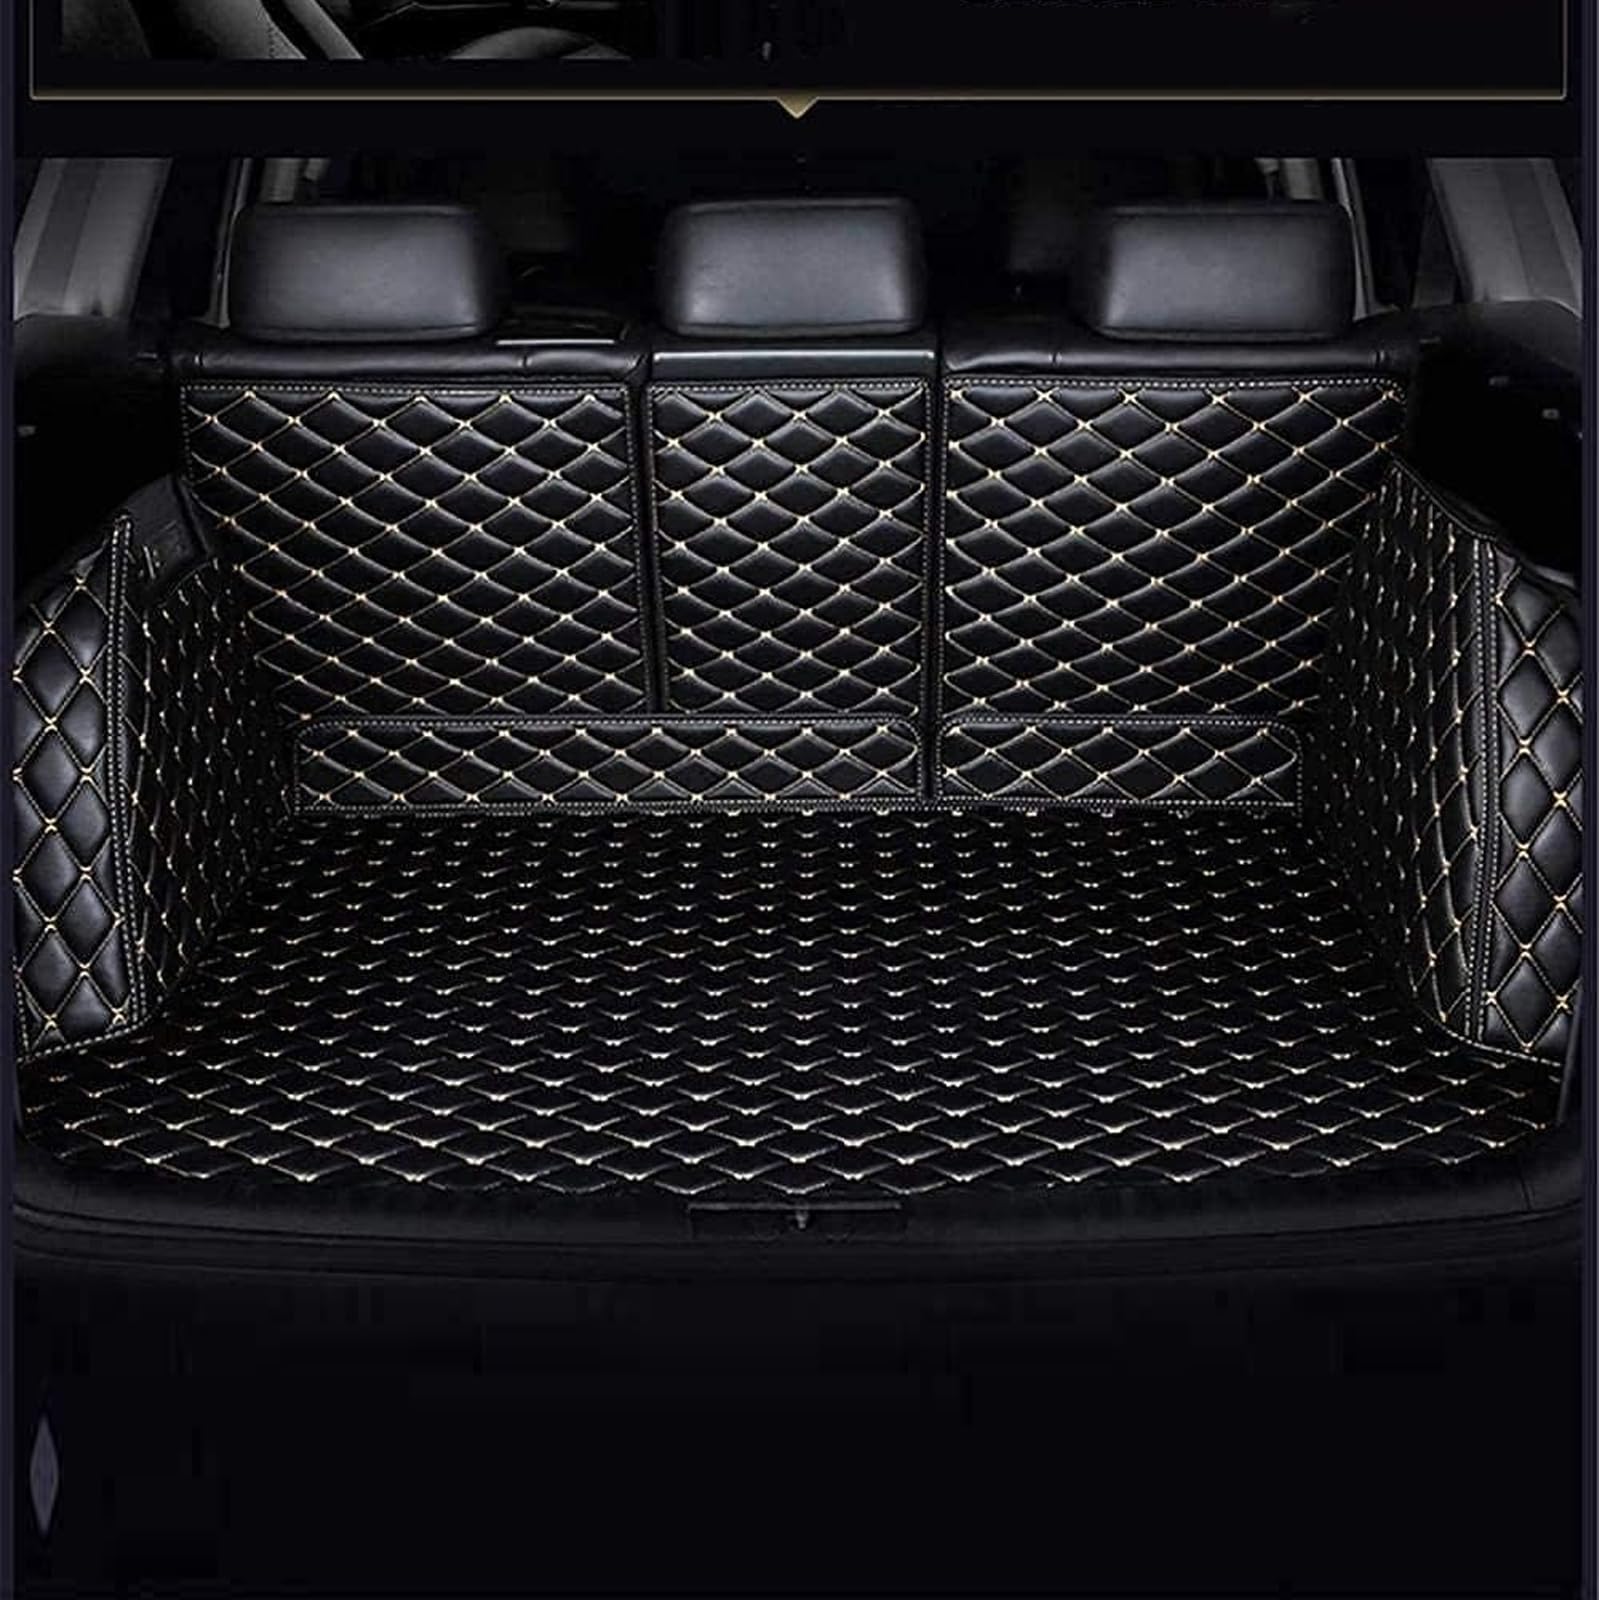 VollstäNdige Einkreisung Leder Kofferraummatte FüR BMW X7 7 Seats 2019-2023, Cargo Kofferraumwanne Antirutschmatte Schutzmatte Kratzfest Teppiche Interieur Car ZubehöR,D/Black-beige von CcacHe